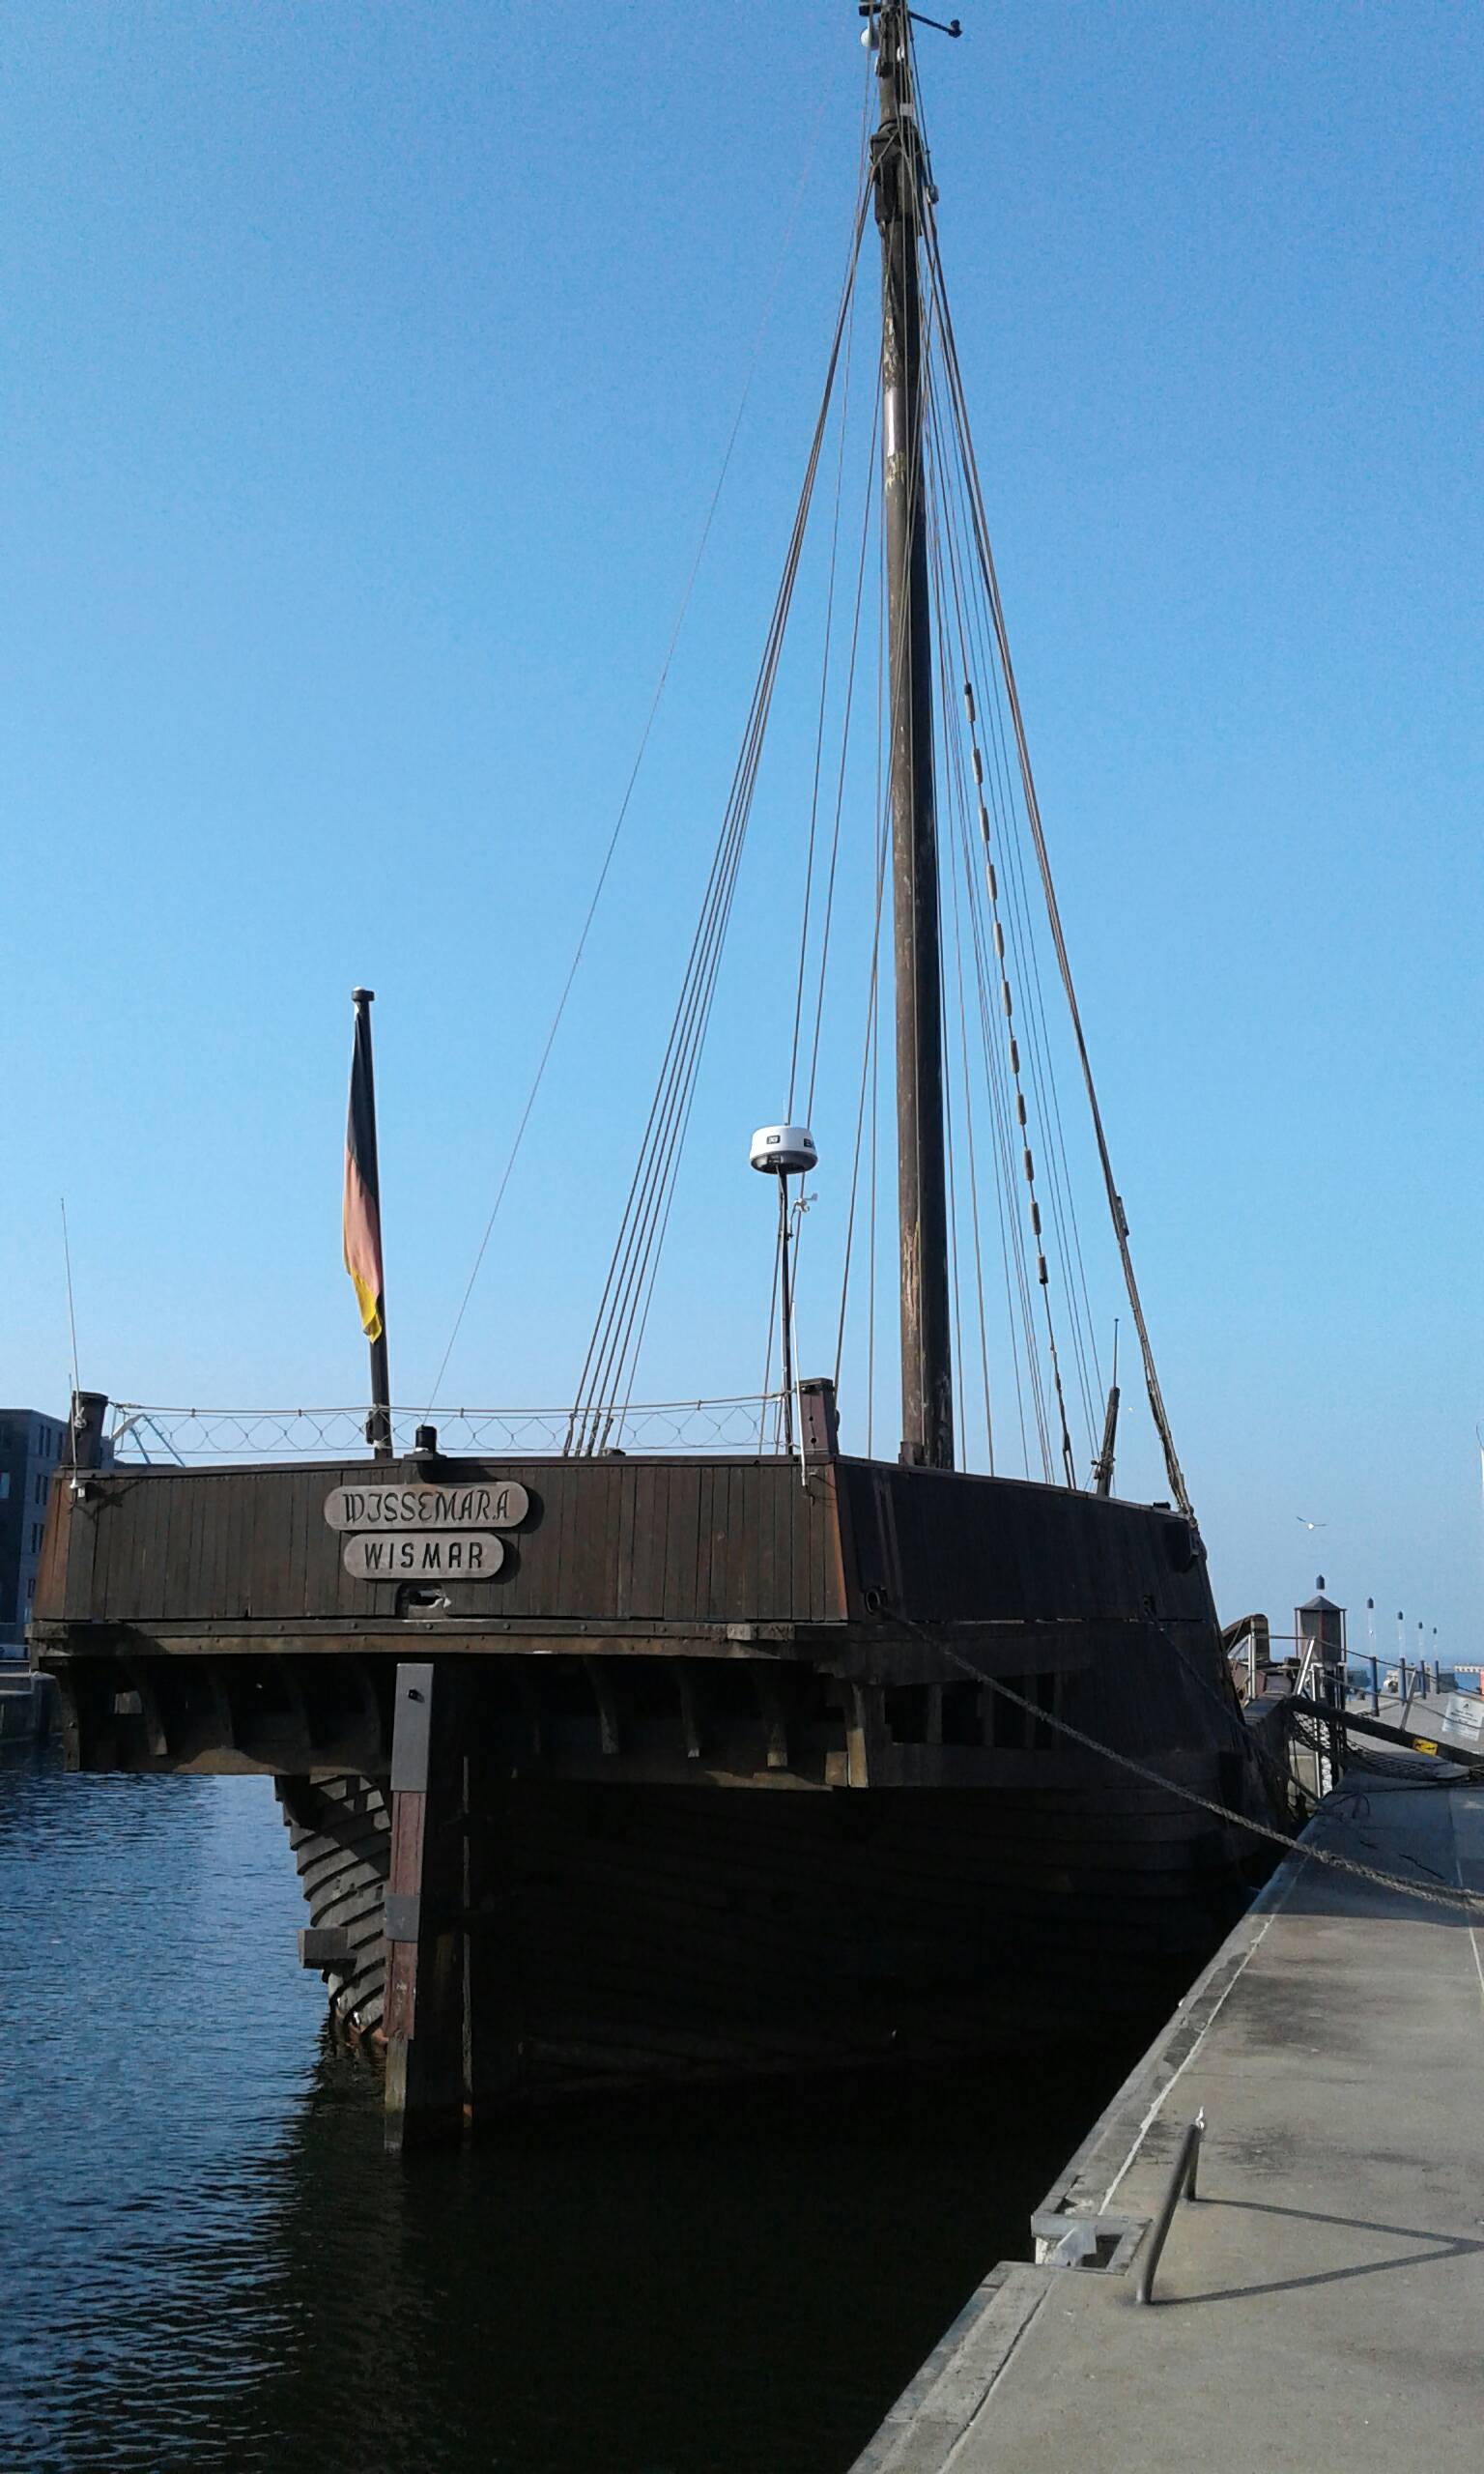 Bild 8 Alter Hafen in Wismar